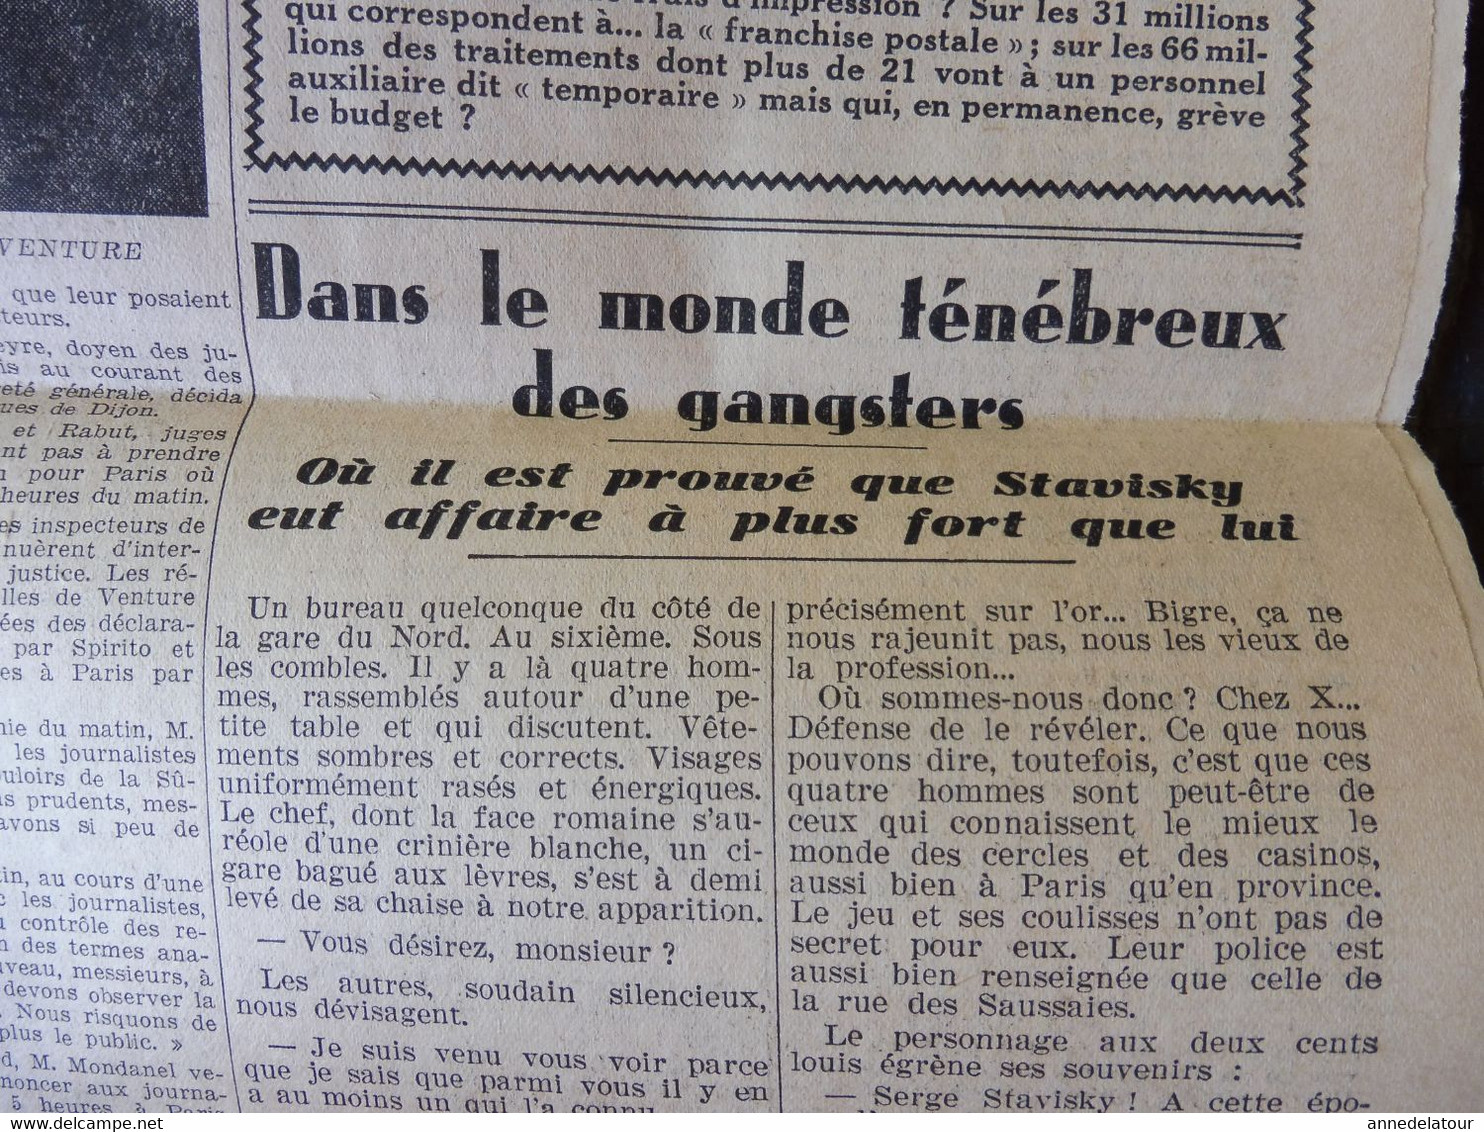 1934 L'AMI DU PEUPLE : Les assassins de M. PRINCE ; Dans le monde ténébreux des gangsters  ; etc